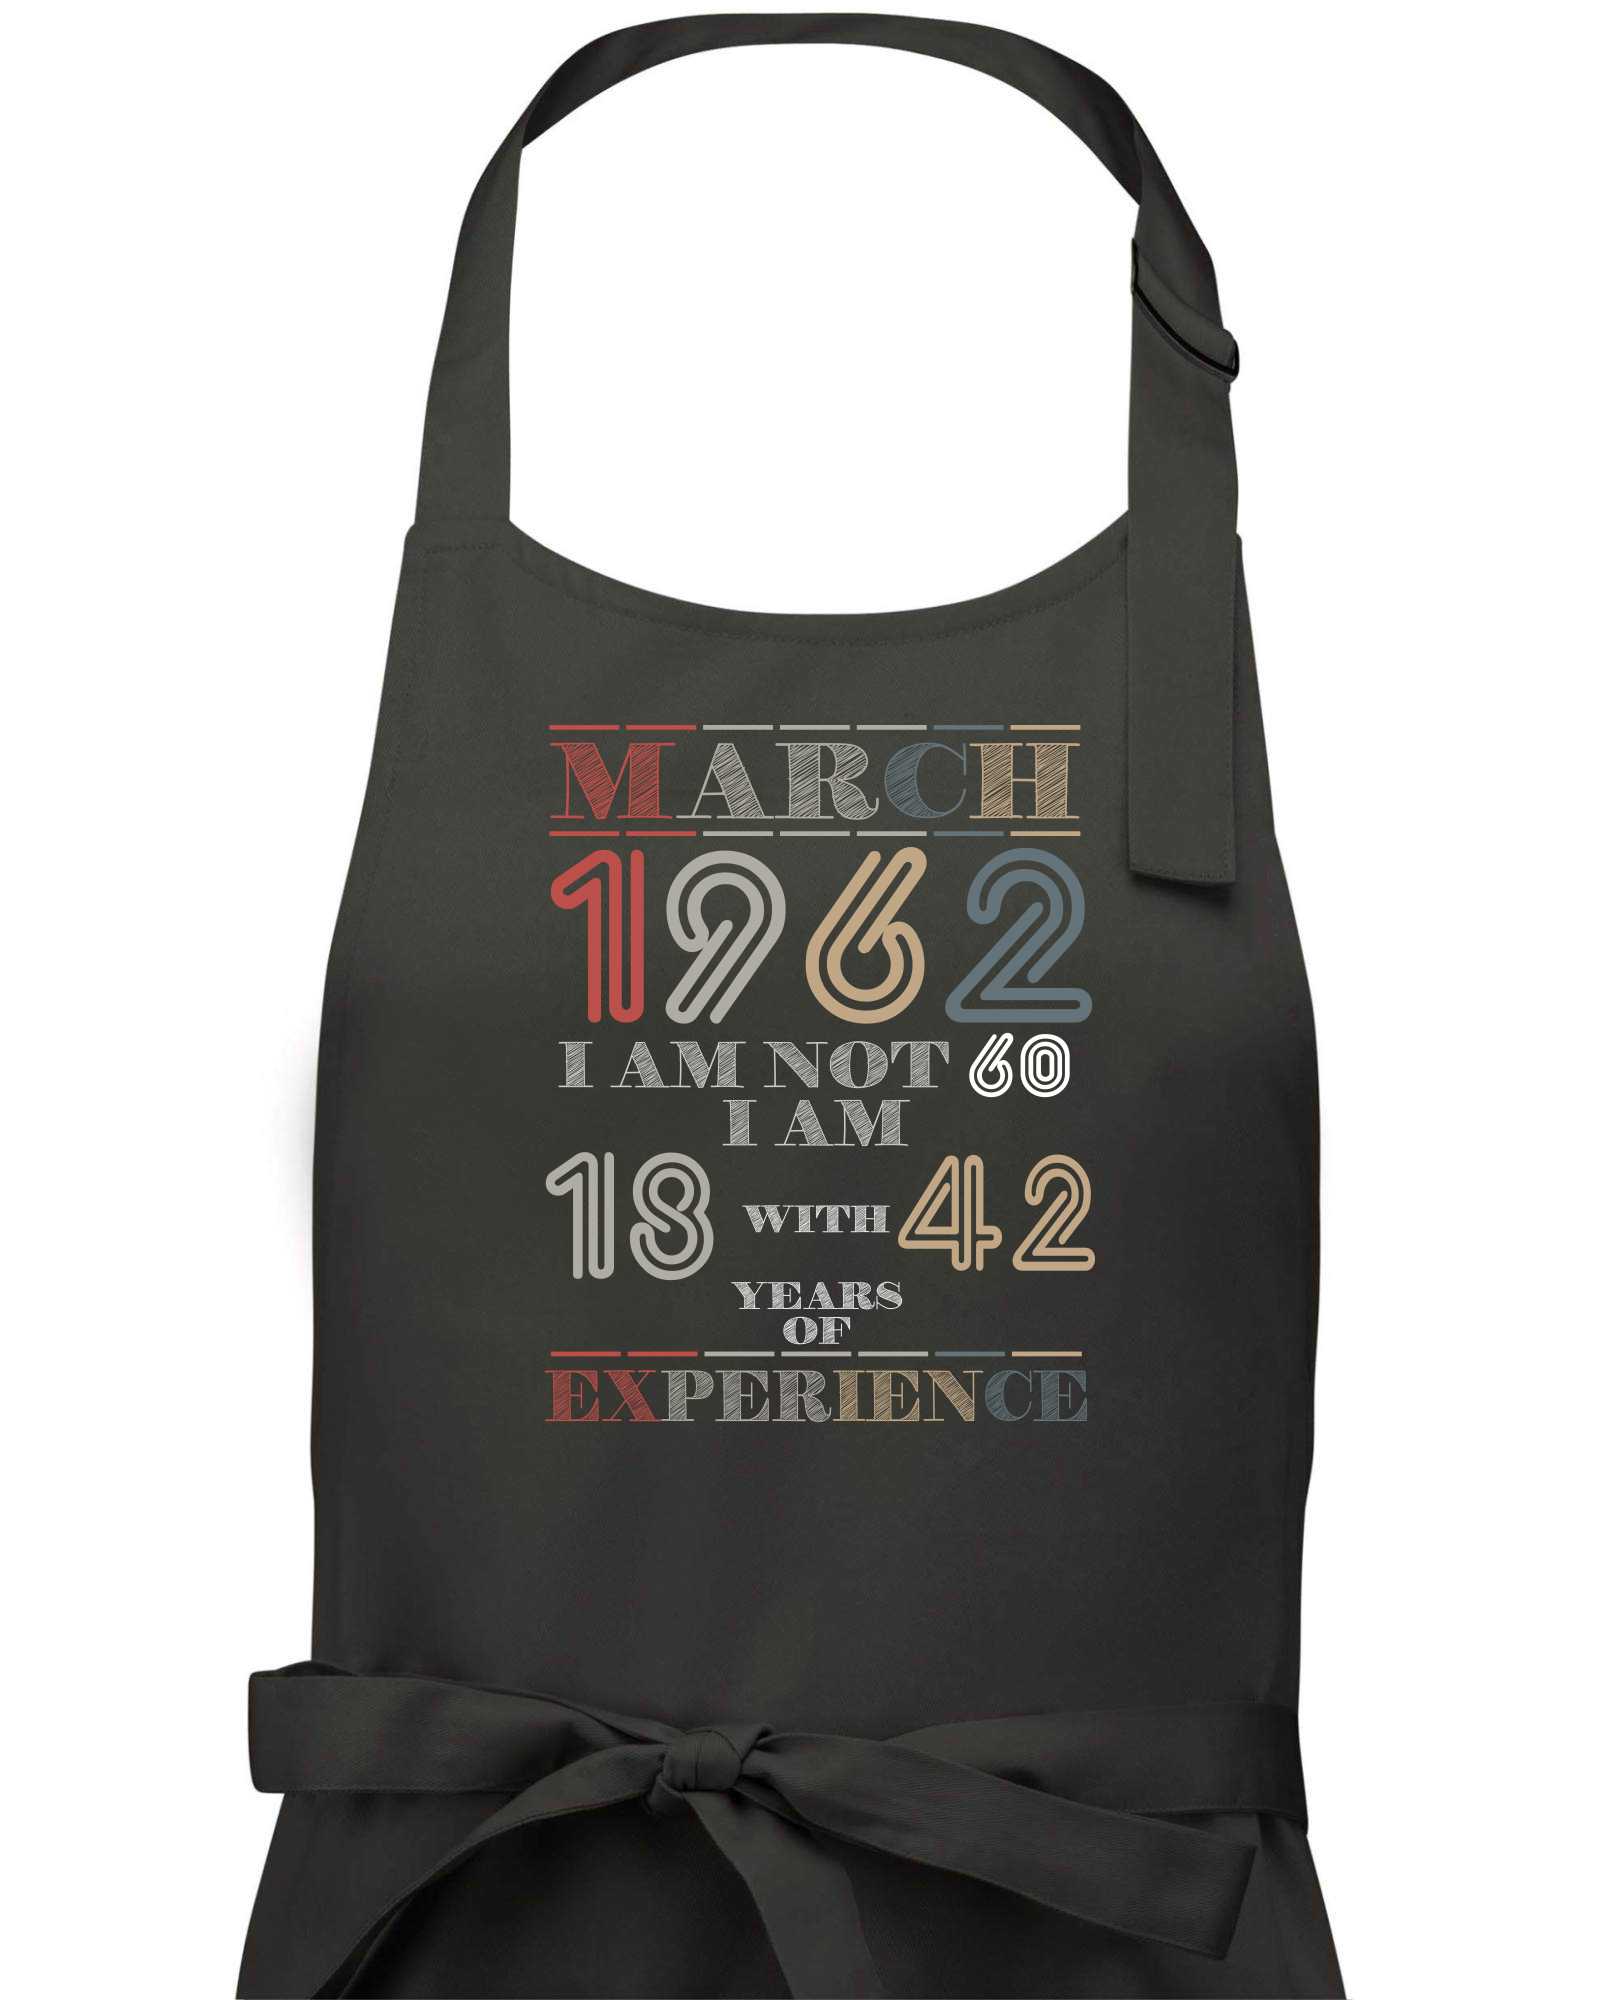 Narozeniny experience 1962 March - Zástěra na vaření